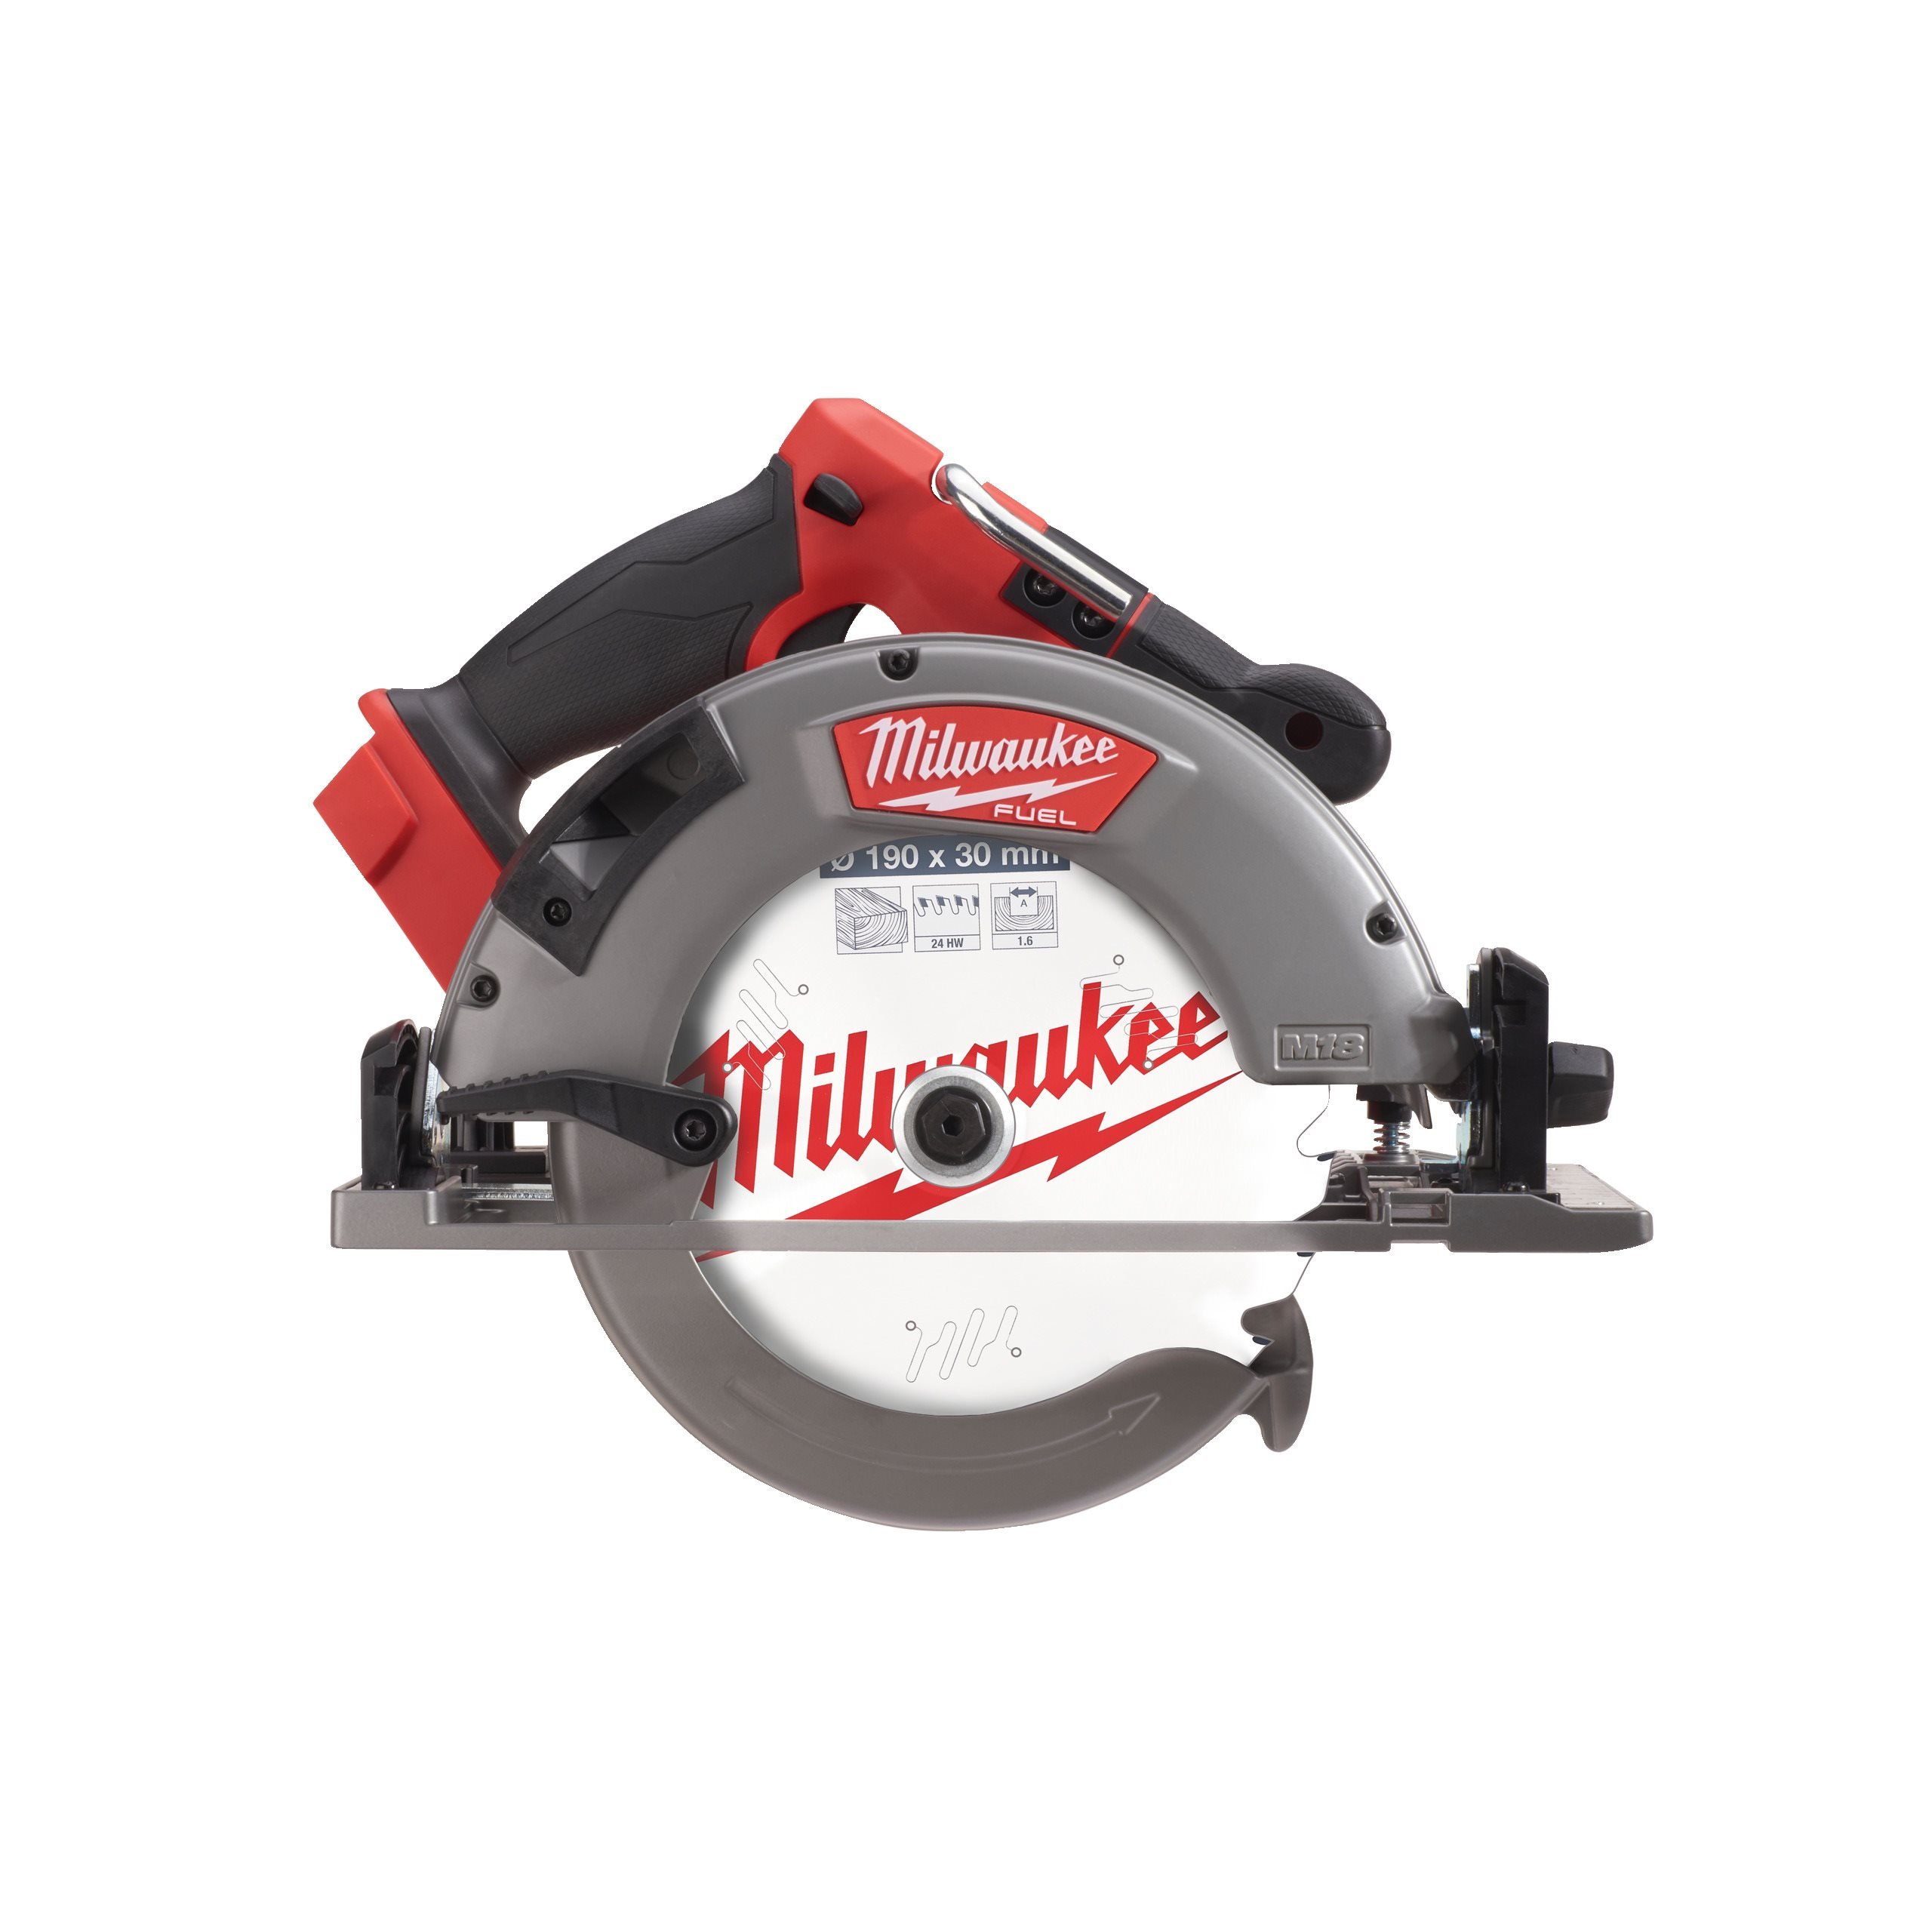 Cordless Circular Saws | Milwaukee Tool UK